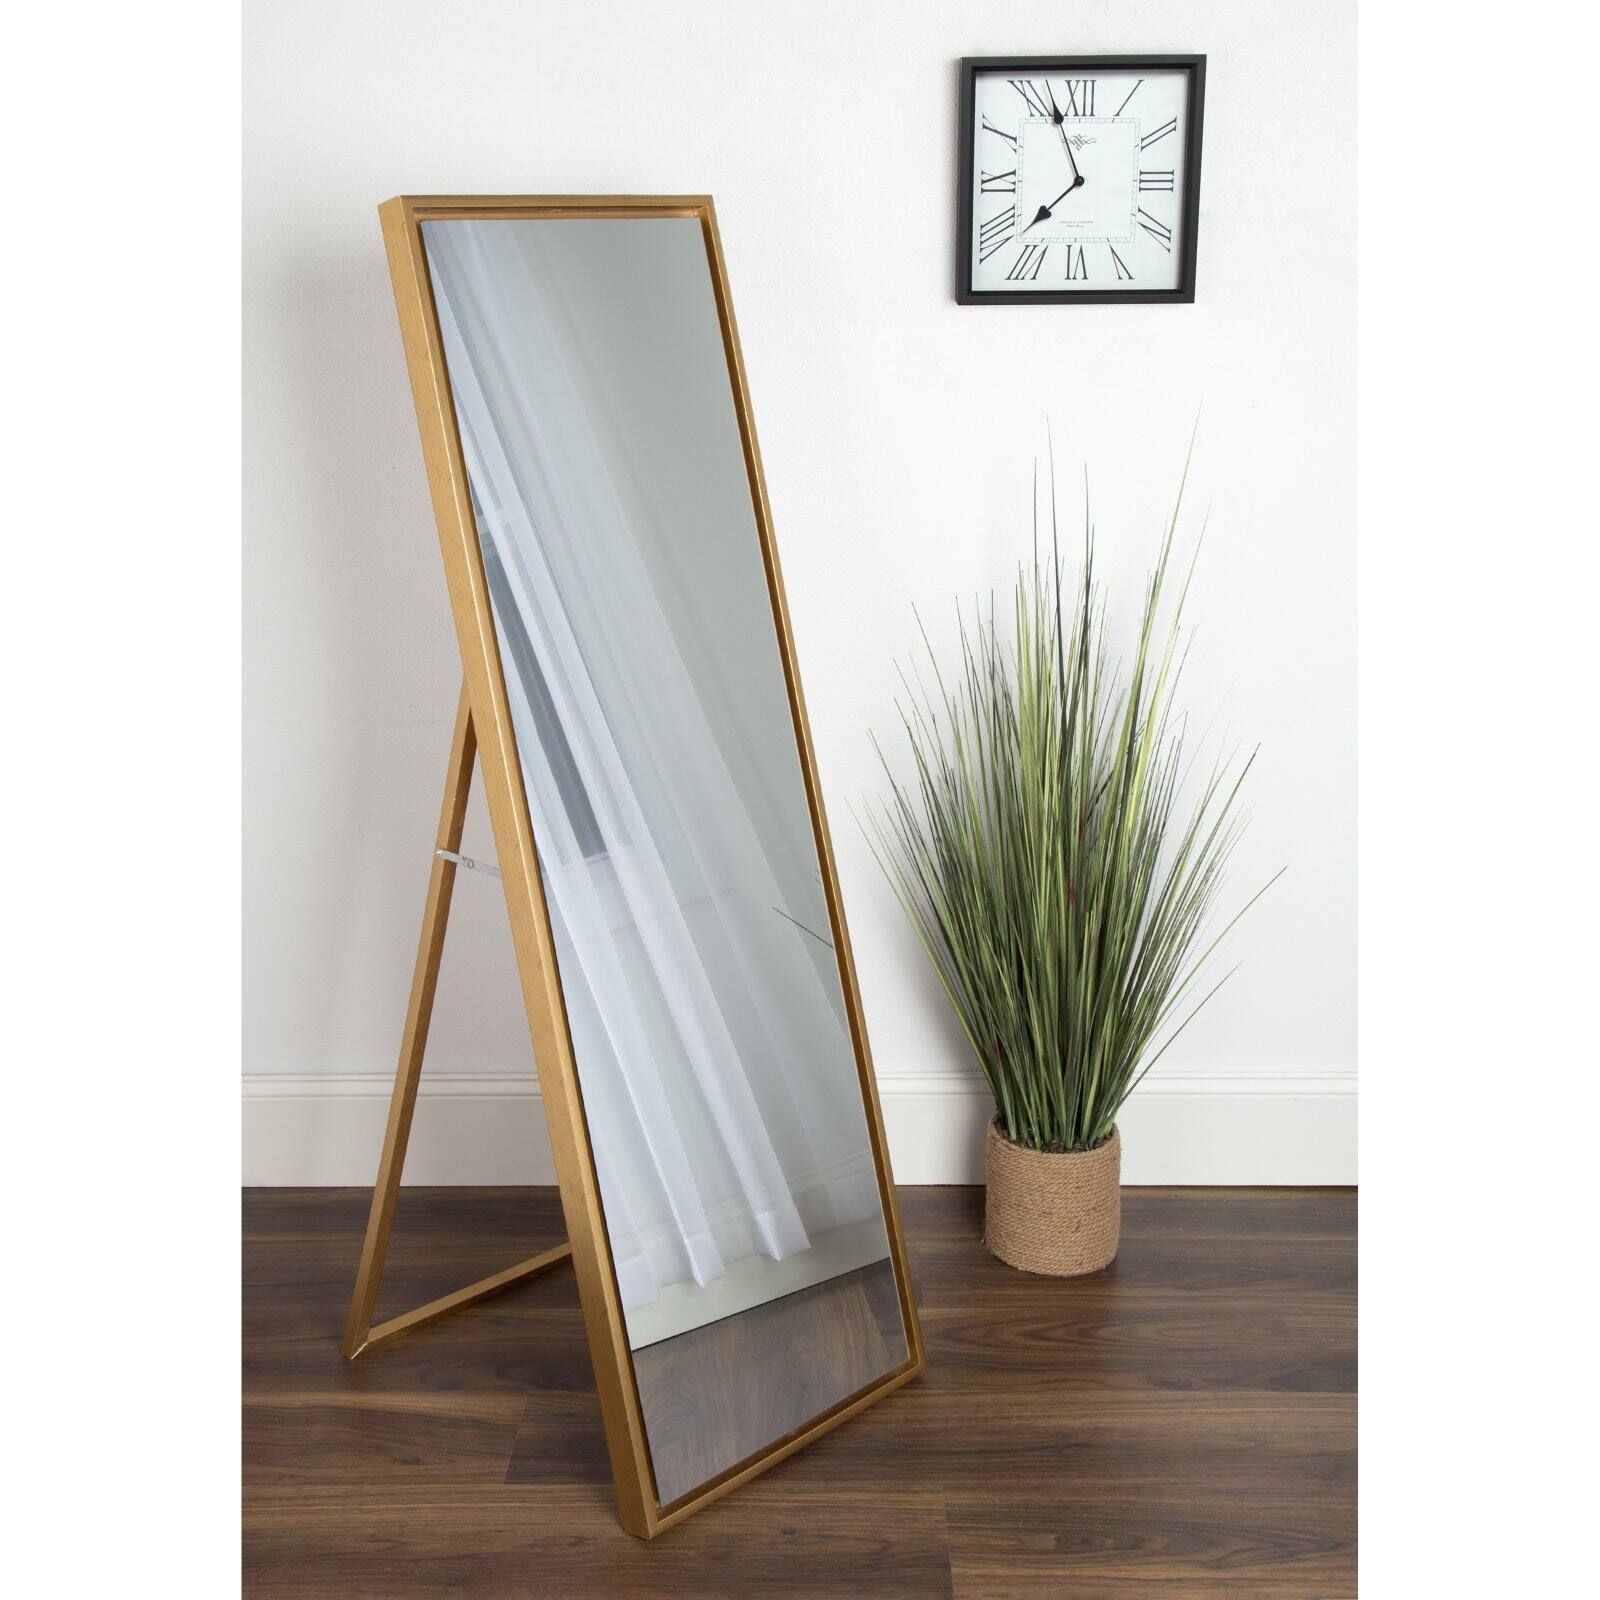 Kate and Laurel Evans Wood Framed Free Standing Floor Mirror - 8W x 58H in. | Walmart (US)